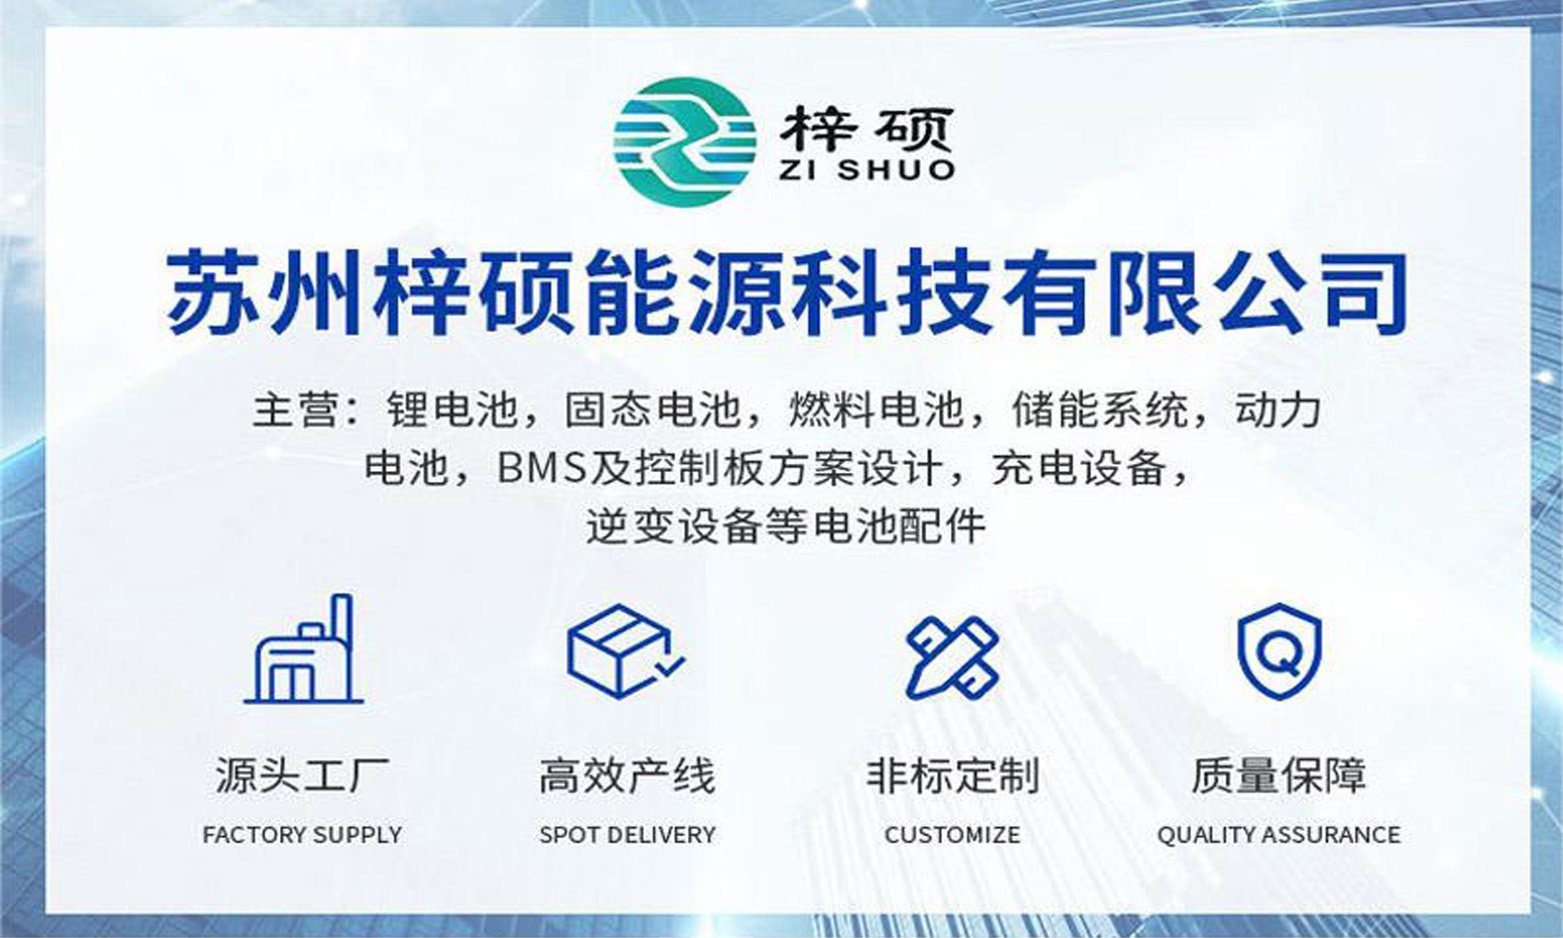 苏州梓硕能源科技有限公司与您相约7月上海快递物流展